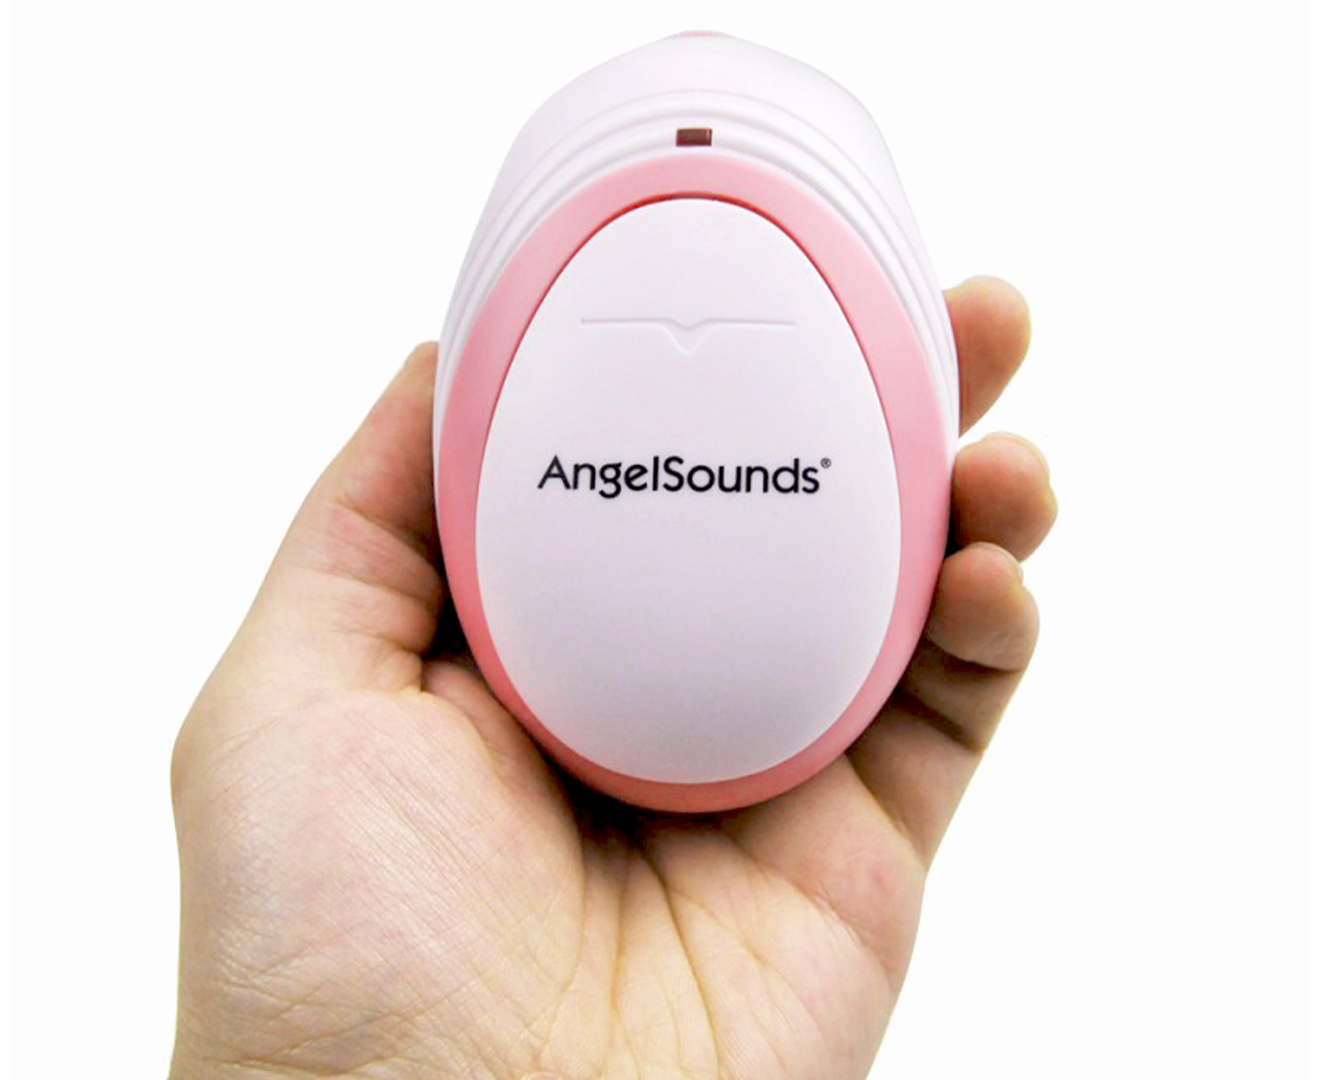 AngelSounds Baby Fetal Mini Doppler 100S<!-- -->